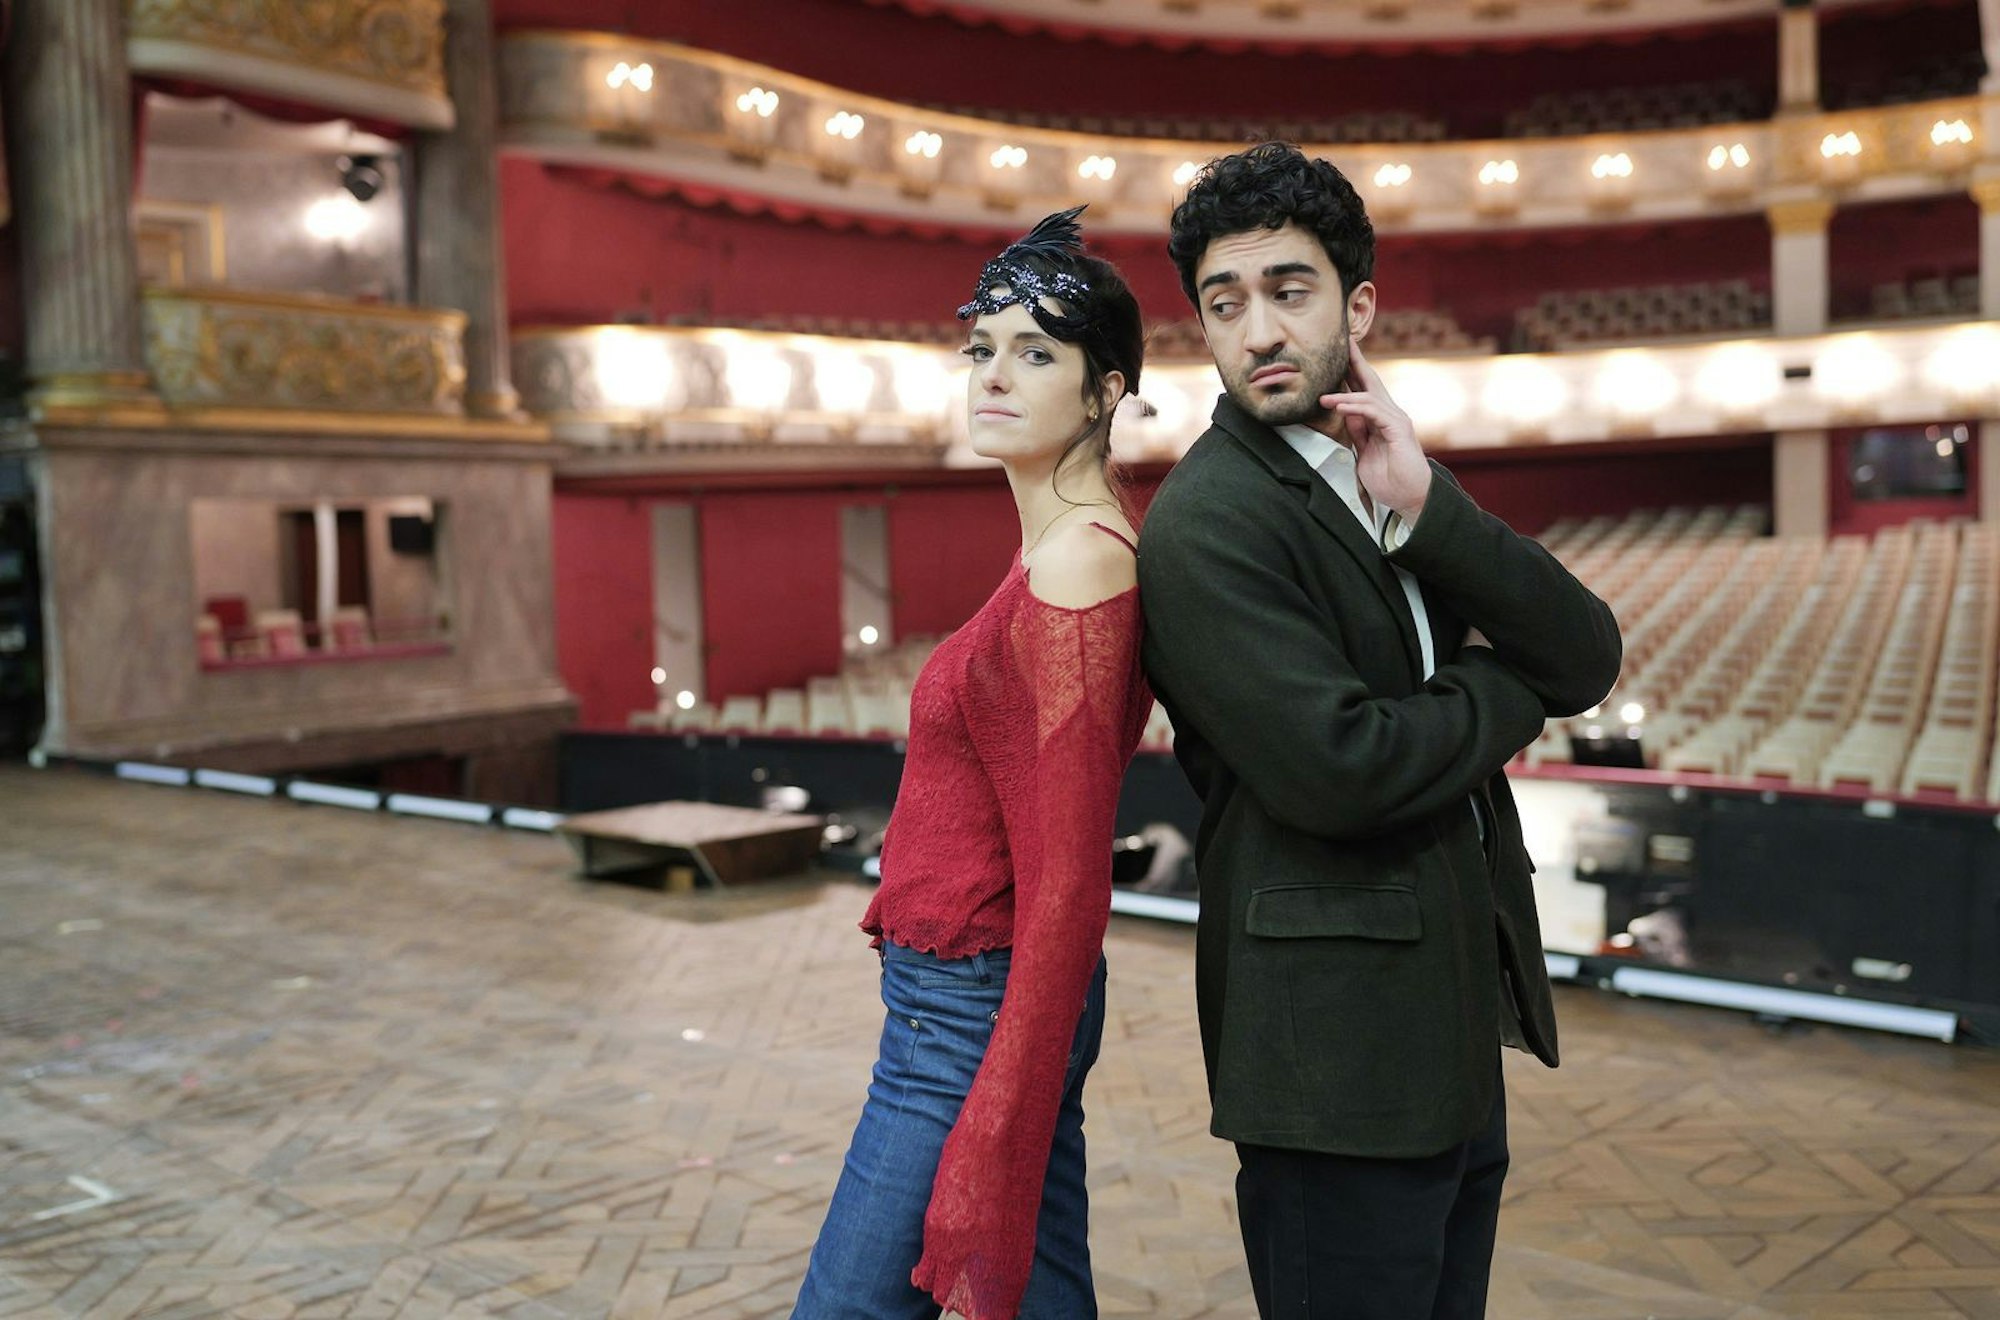 Rosa (Marie Nasemann) und Gabriel (Eidin Jalali) sind die Zweitbesetzung der Operette „Die Fledermaus“. Wie die von ihnen dargestellten Figuren haben sie auch privat Beziehungsprobleme. (Bild: MDR/ARD Kultur/Brenner&Mai Film/Norbert Mai)